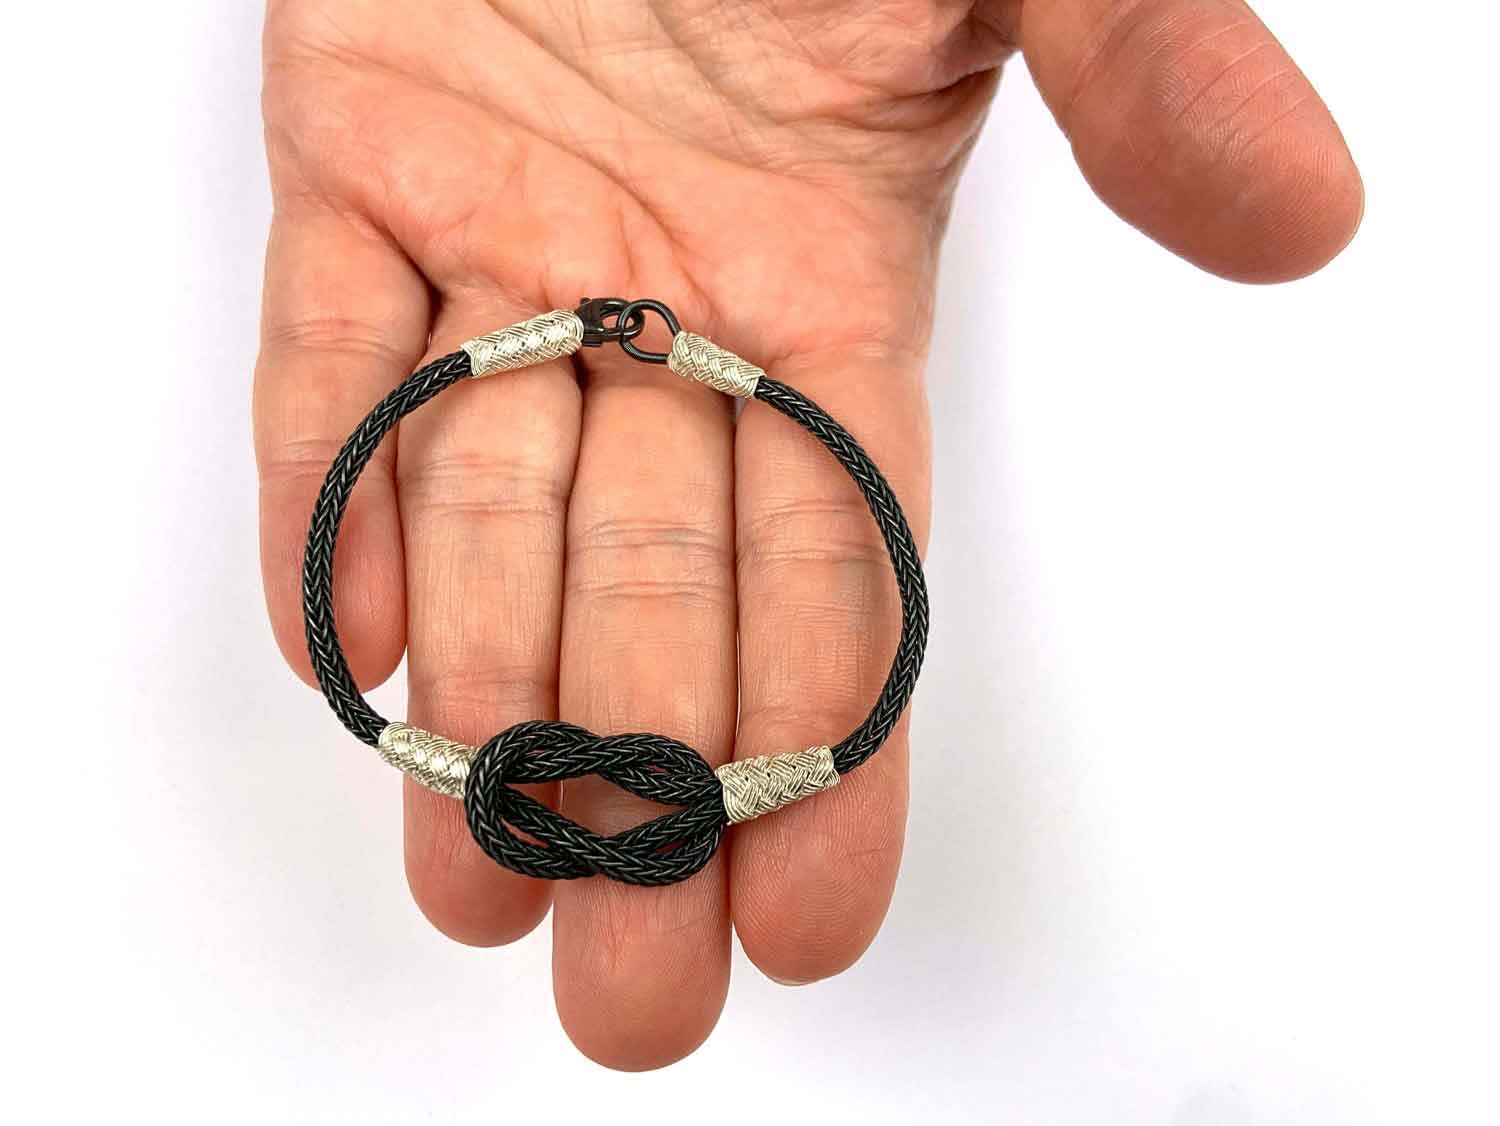 The Lunara Bracelet